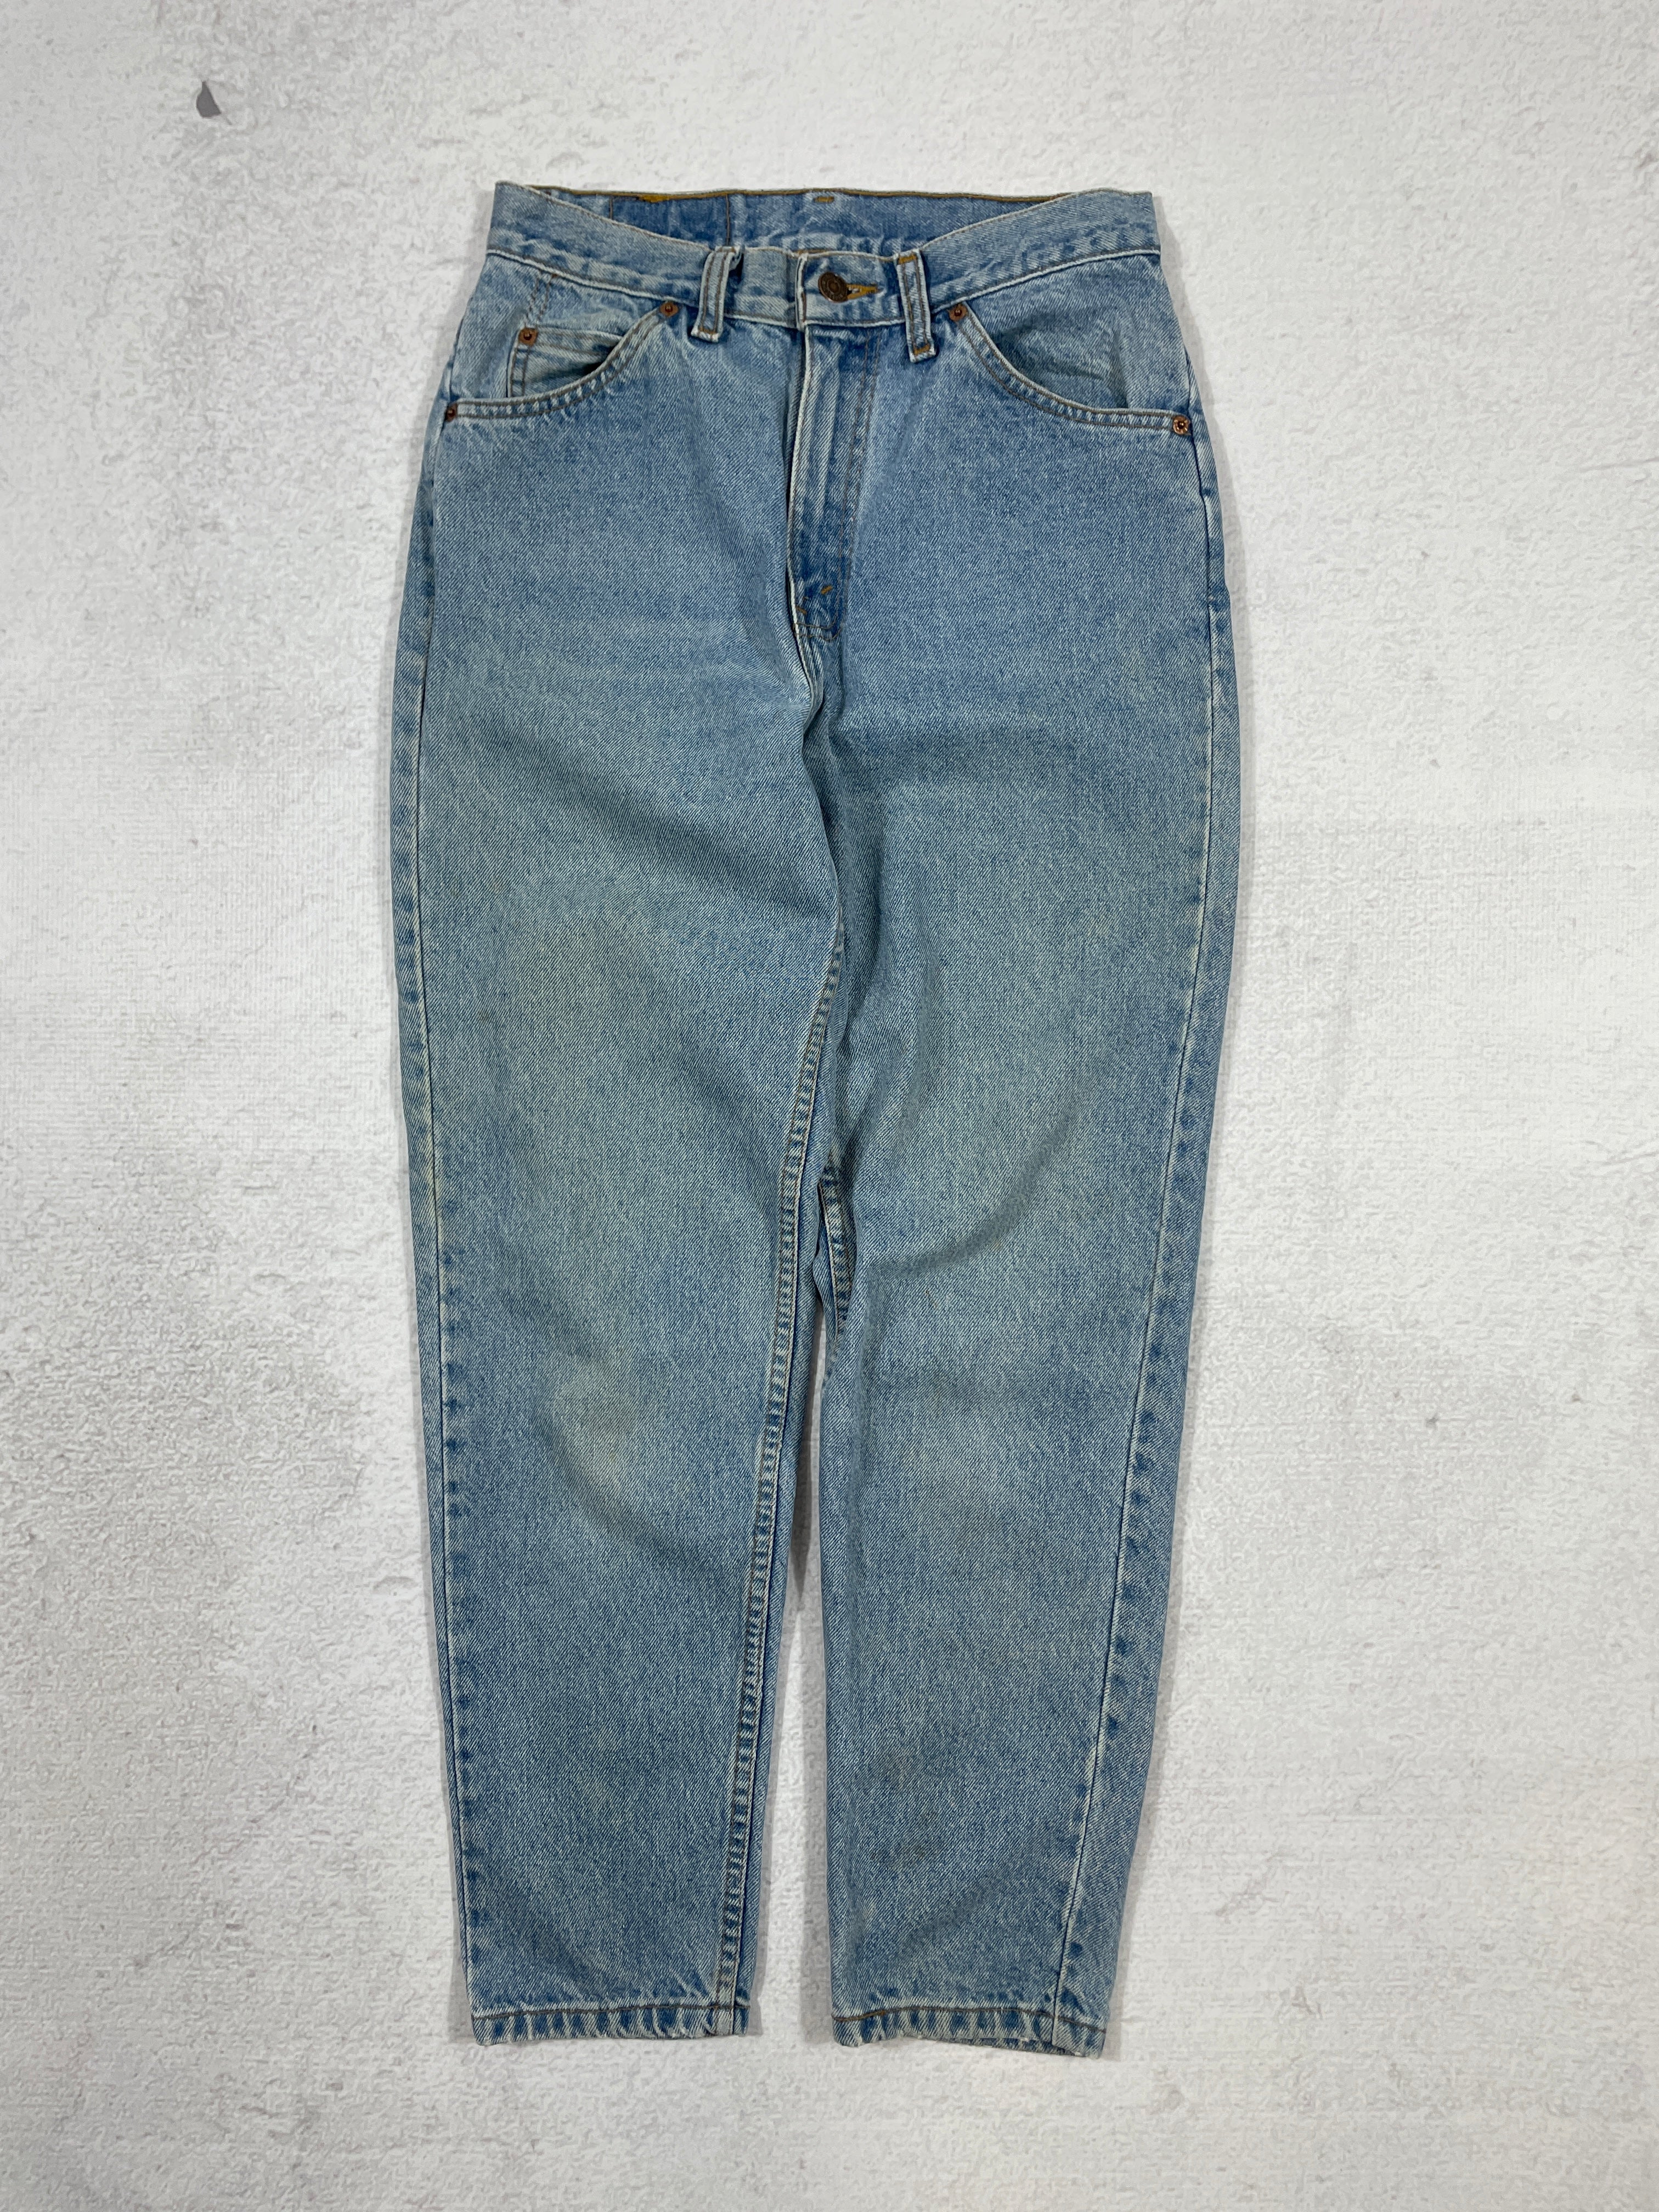 Vintage Levis Orange Tab Jeans - Women's 26Wx28L